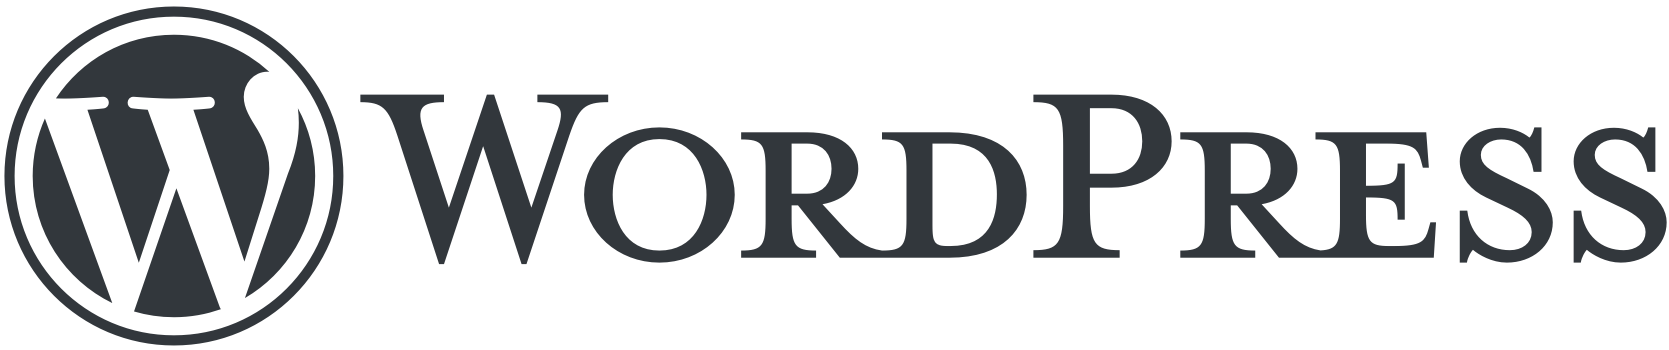 WordPress hosting provider logo